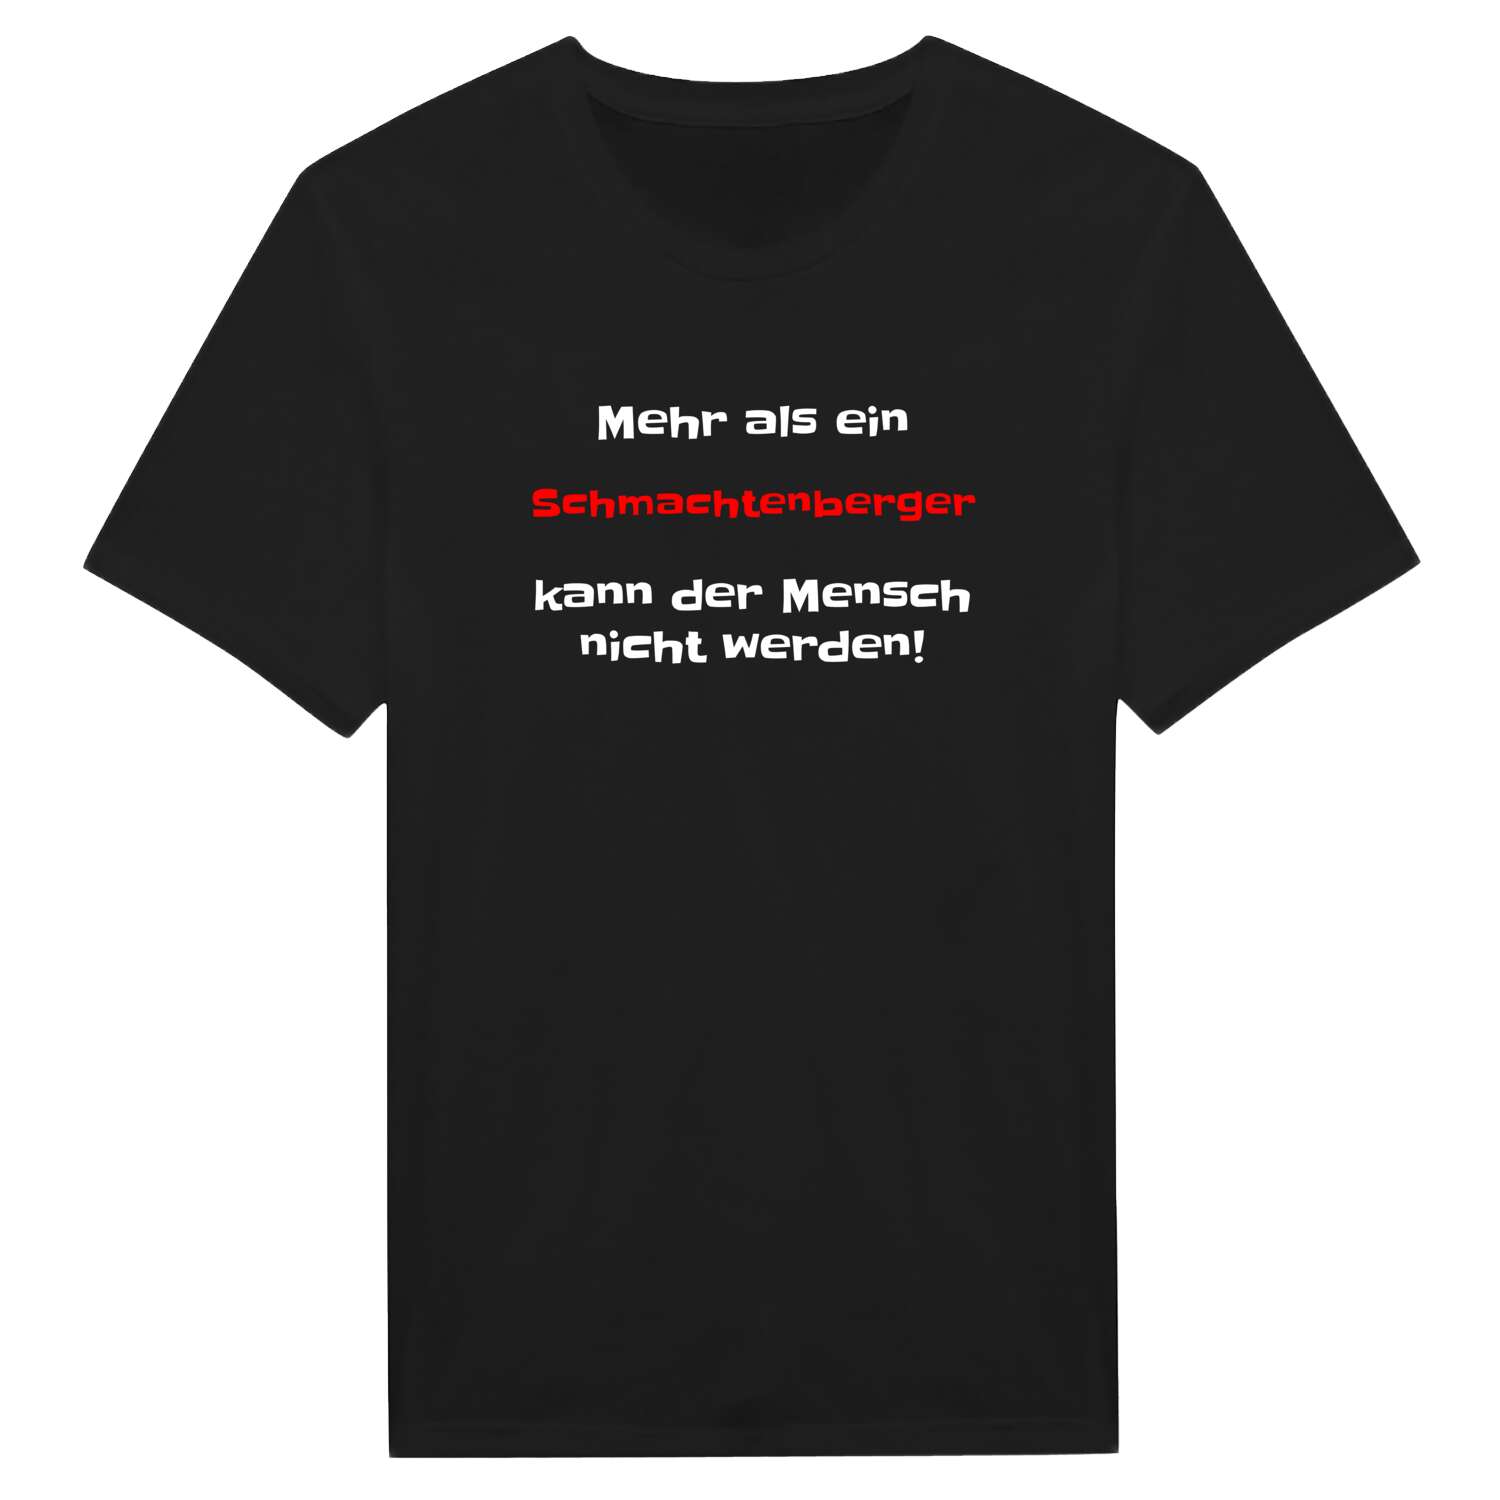 Schmachtenberg T-Shirt »Mehr als ein«